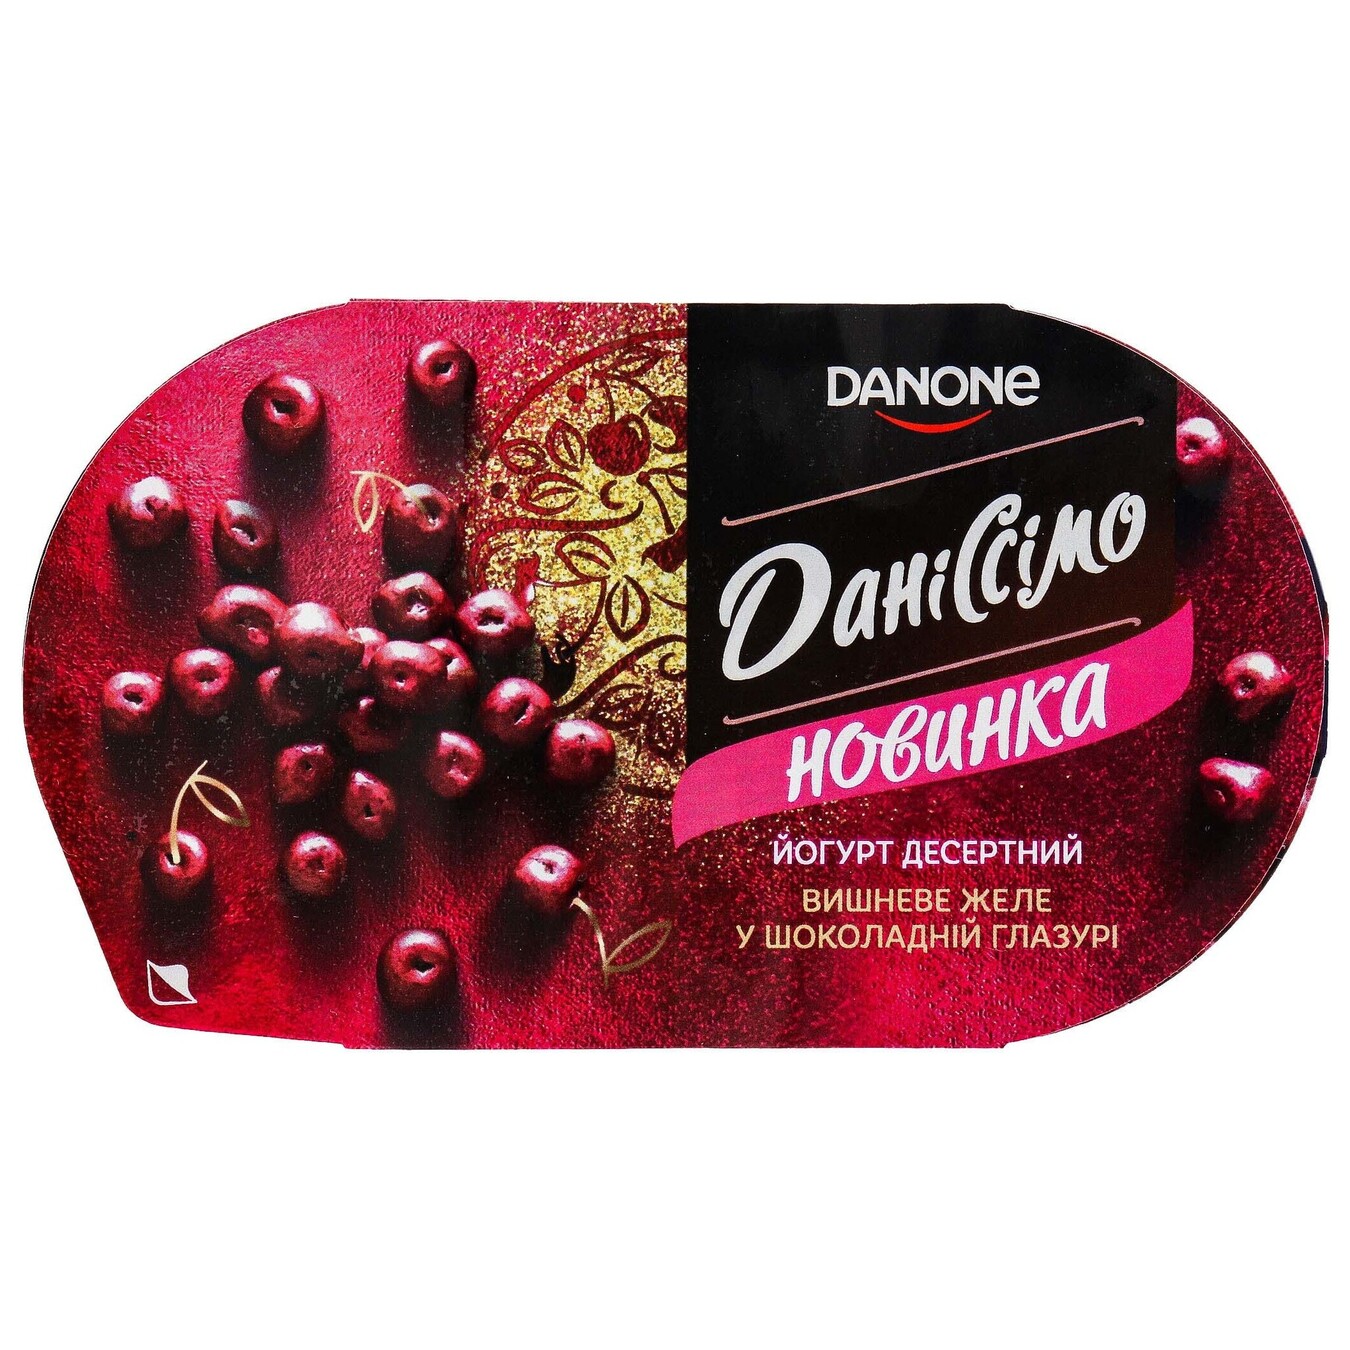 Danissimo Dessert Fantasia cherry bite jelly in glaze 6.8% 105g 2